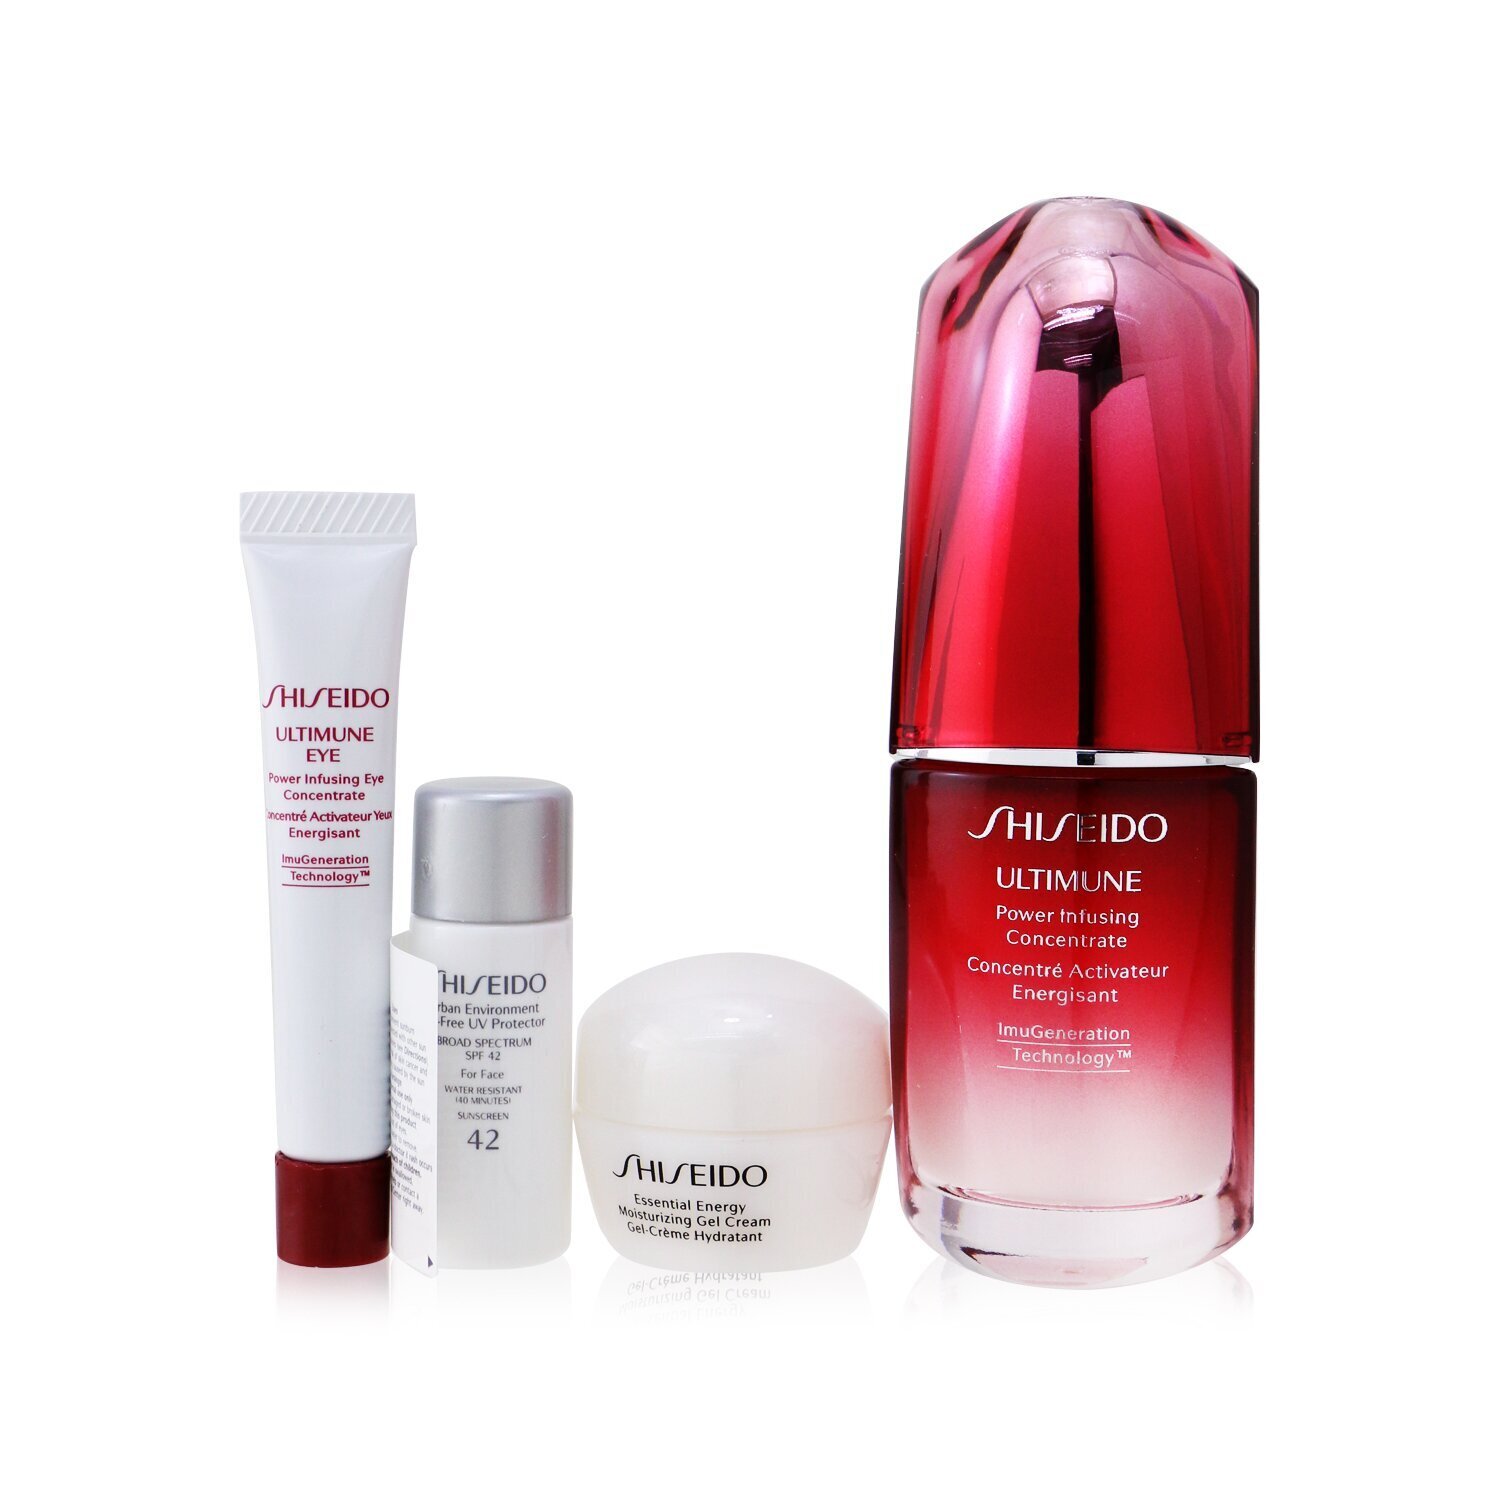 Shiseido Ultimate Hydrating Glow Set 4pcs